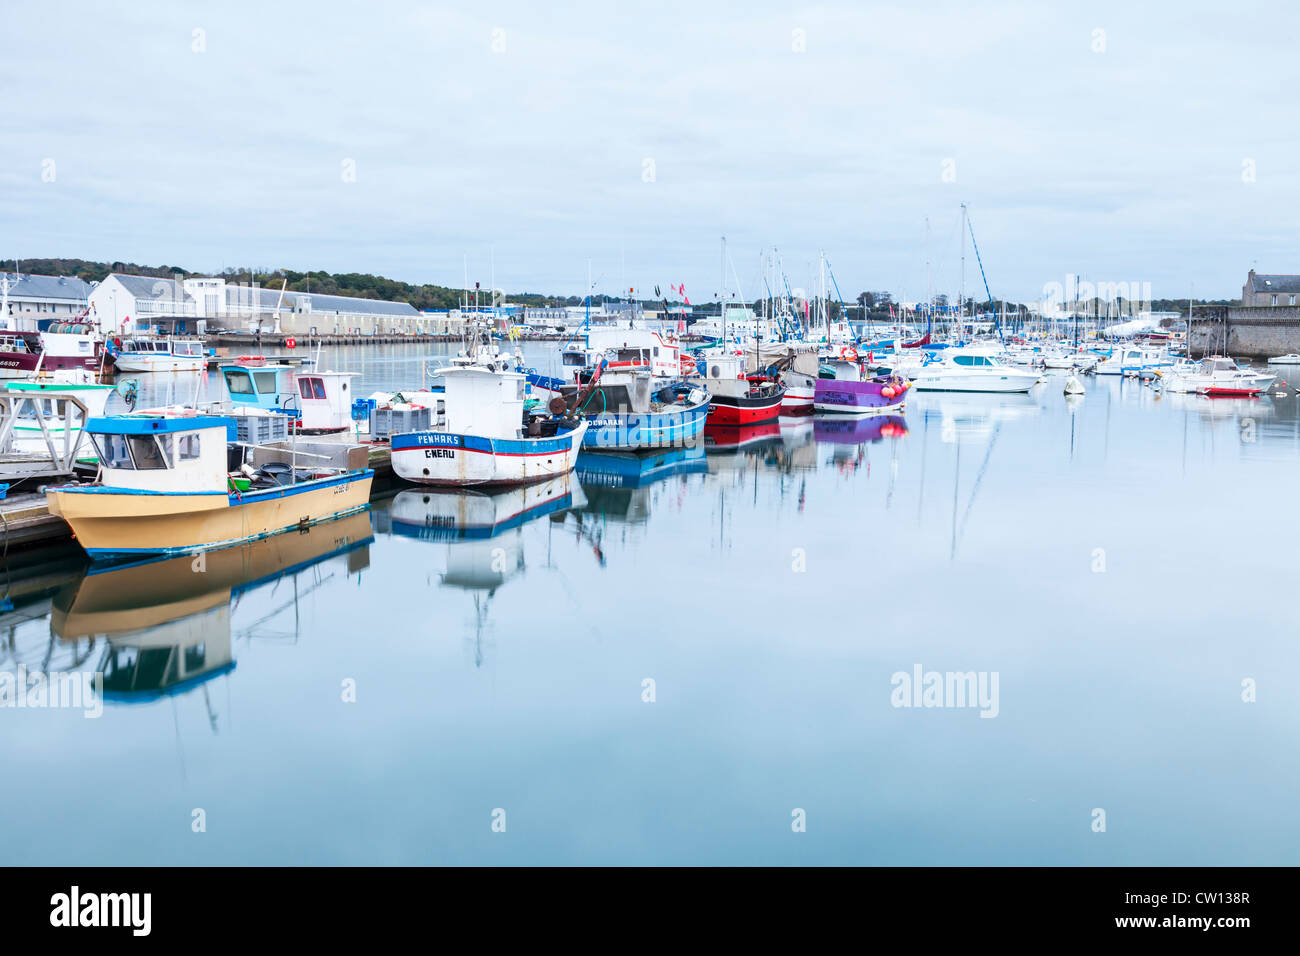 Bateaux de pêche dans le port de Concarneau, Bretagne, France, et la maison de vente aux enchères du poisson sur la gauche. Banque D'Images